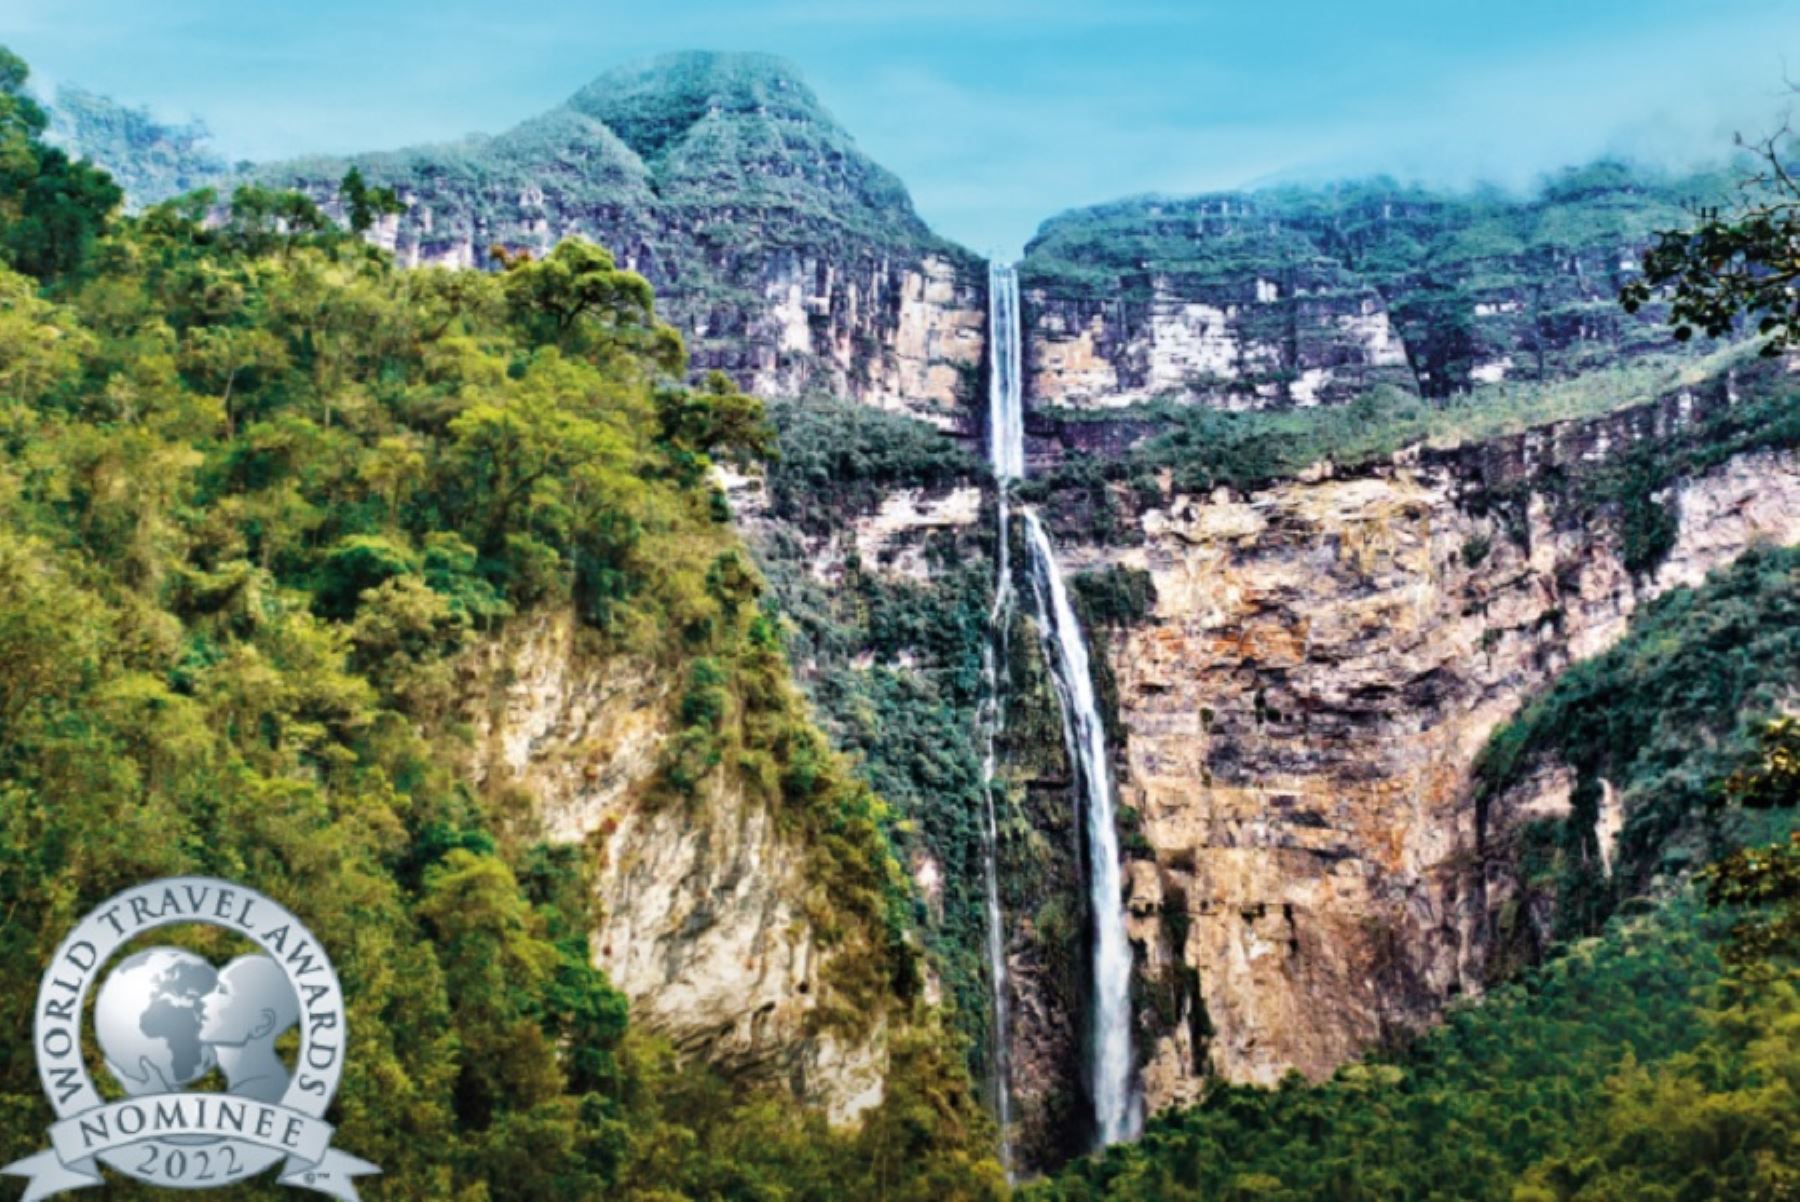 La majestuosa catarata de Gocta, ubicada en la región Amazonas y una de las más altas del mundo, es uno de los atractivos turísticos emblemáticos del Perú que está nominado como “Mejor destino verde mundial”, en la edición global de los World Travel Awards 2022.